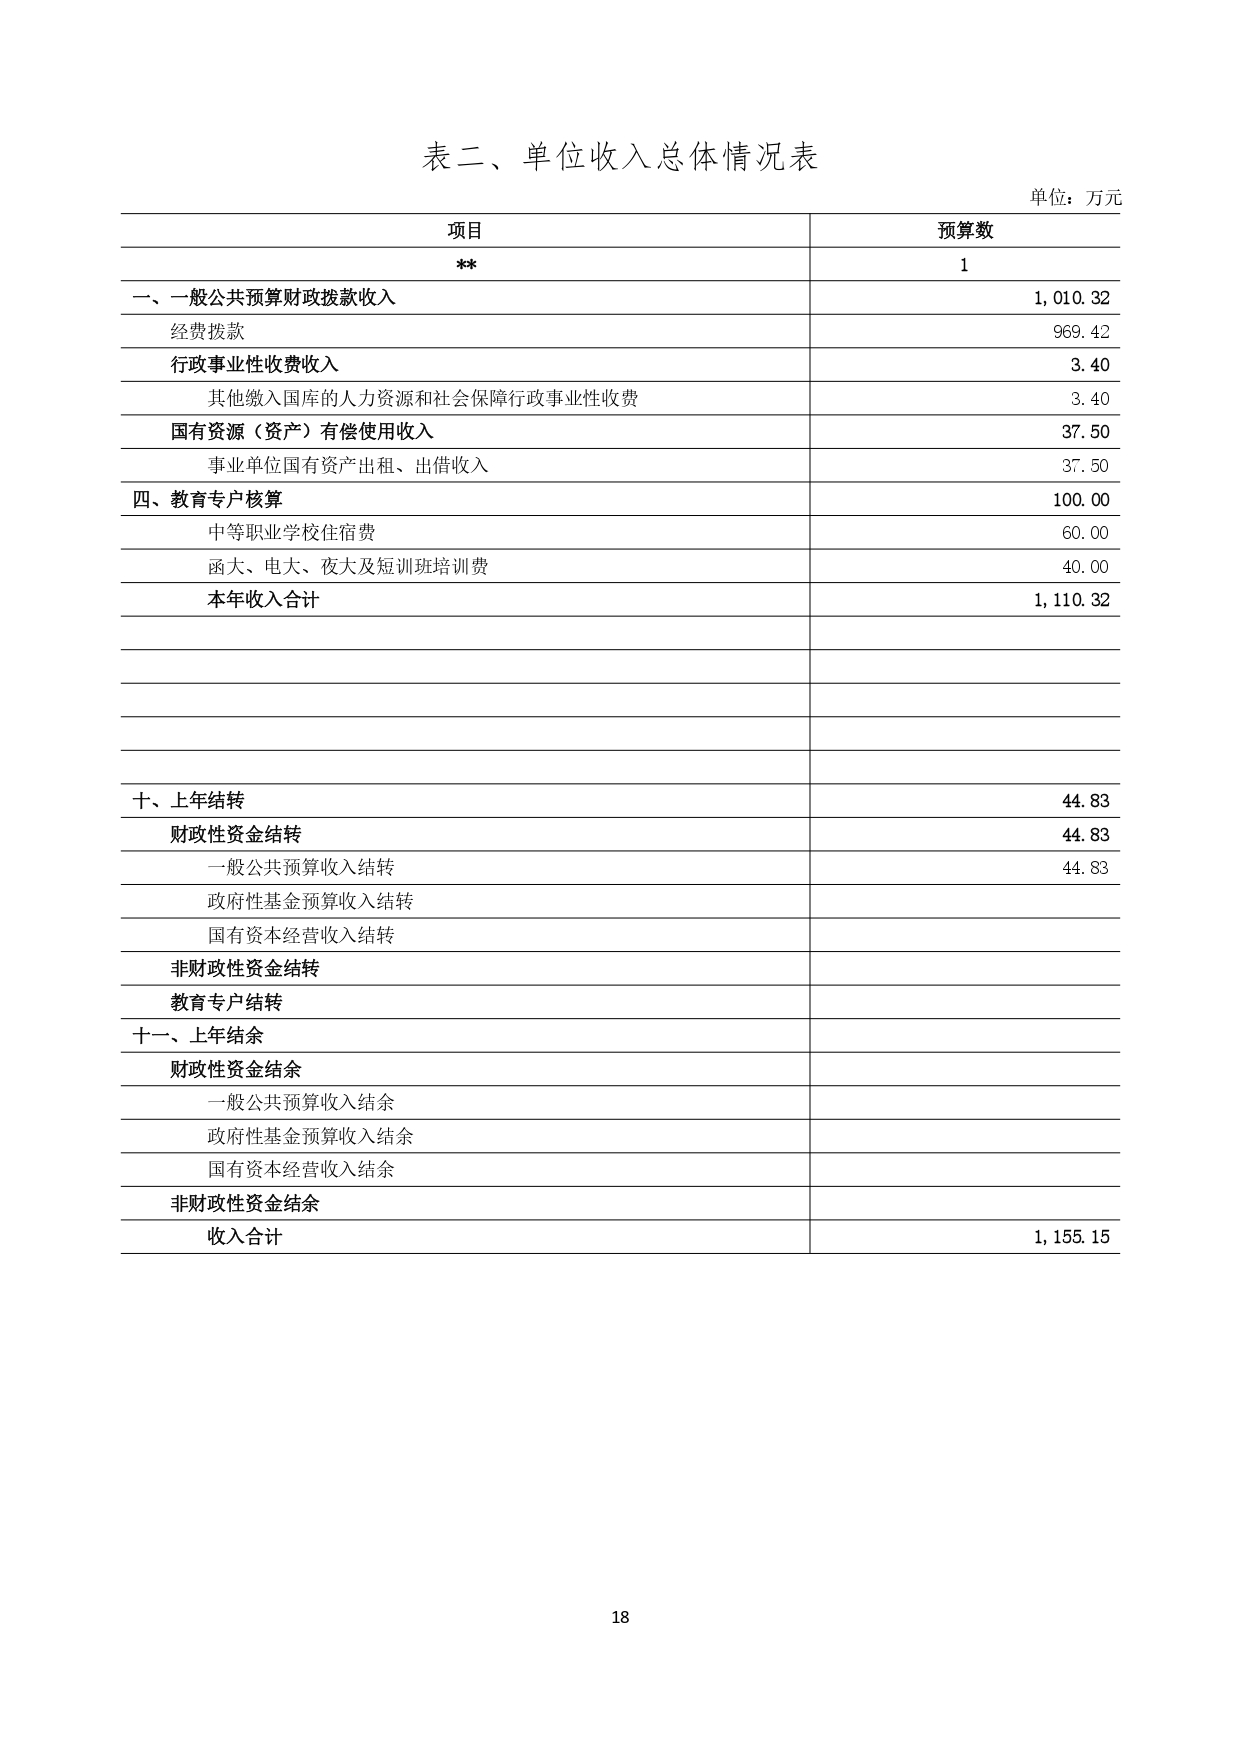 甘肃省广播电视学校2023年单位预算公开报告_page-0019.jpg